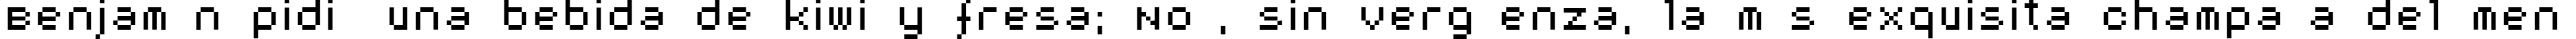 Пример написания шрифтом AuX DotBitC текста на испанском